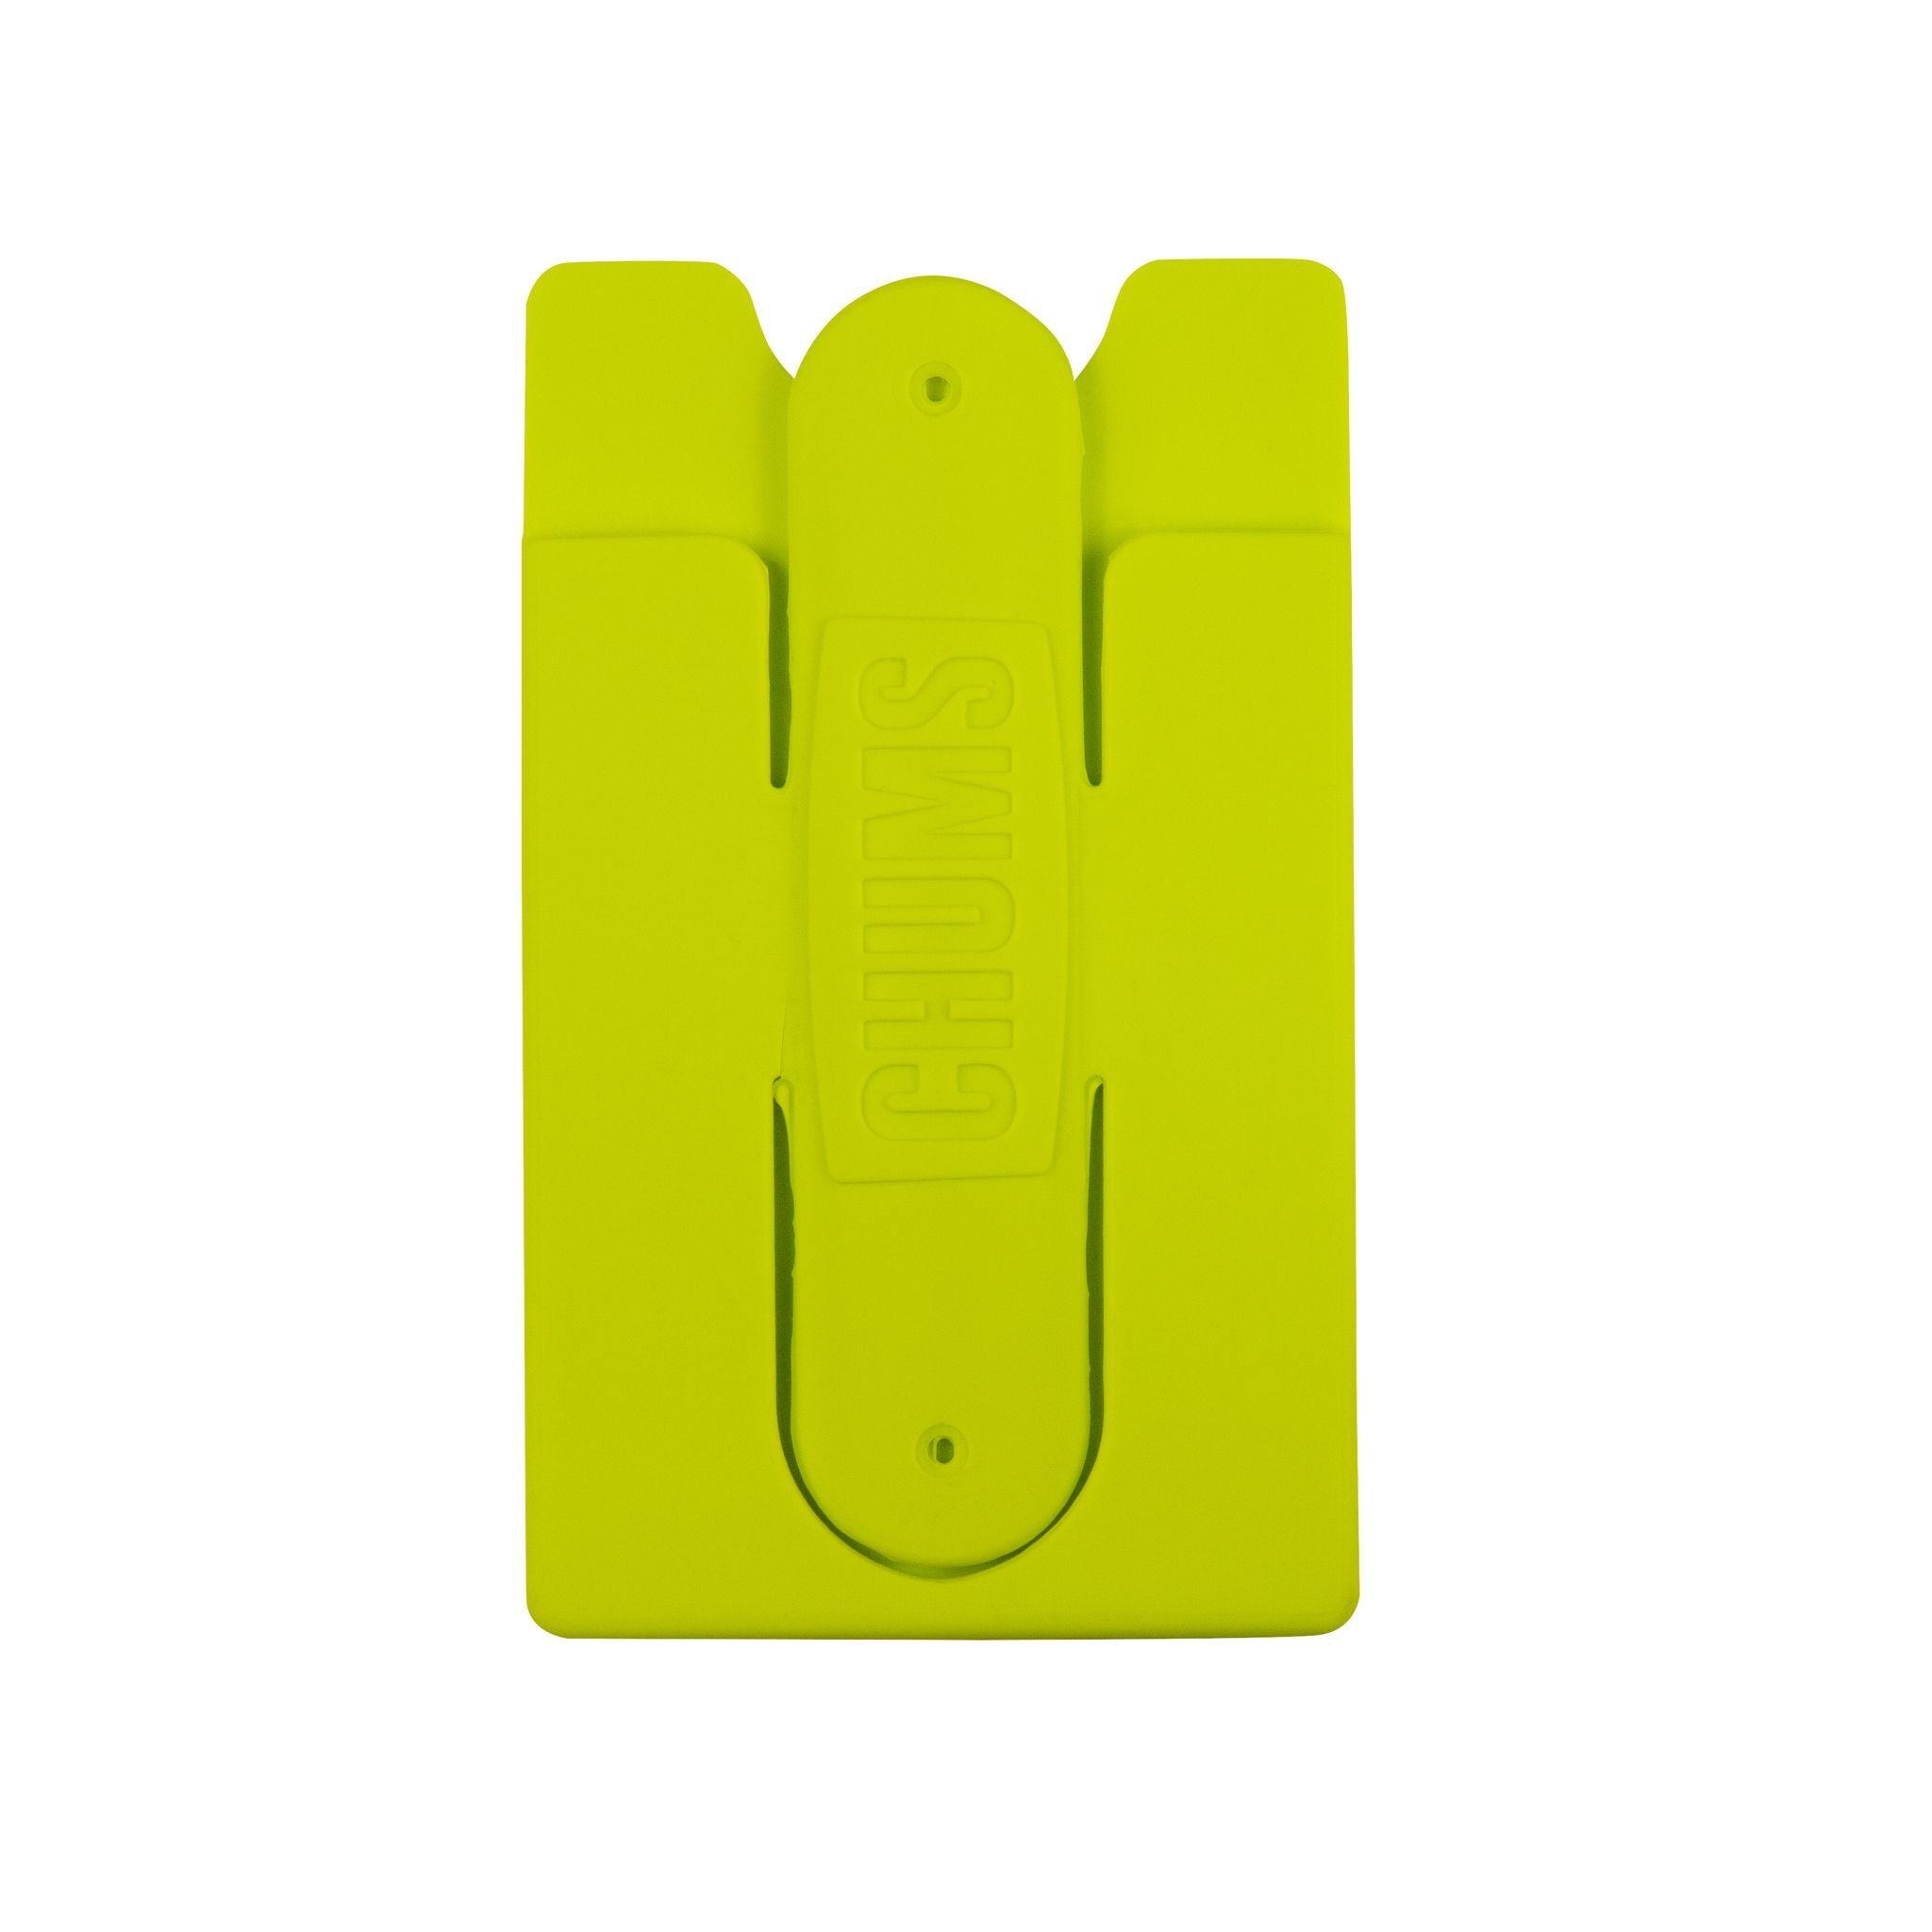 #18575132 back of phone wallet flipper neon green